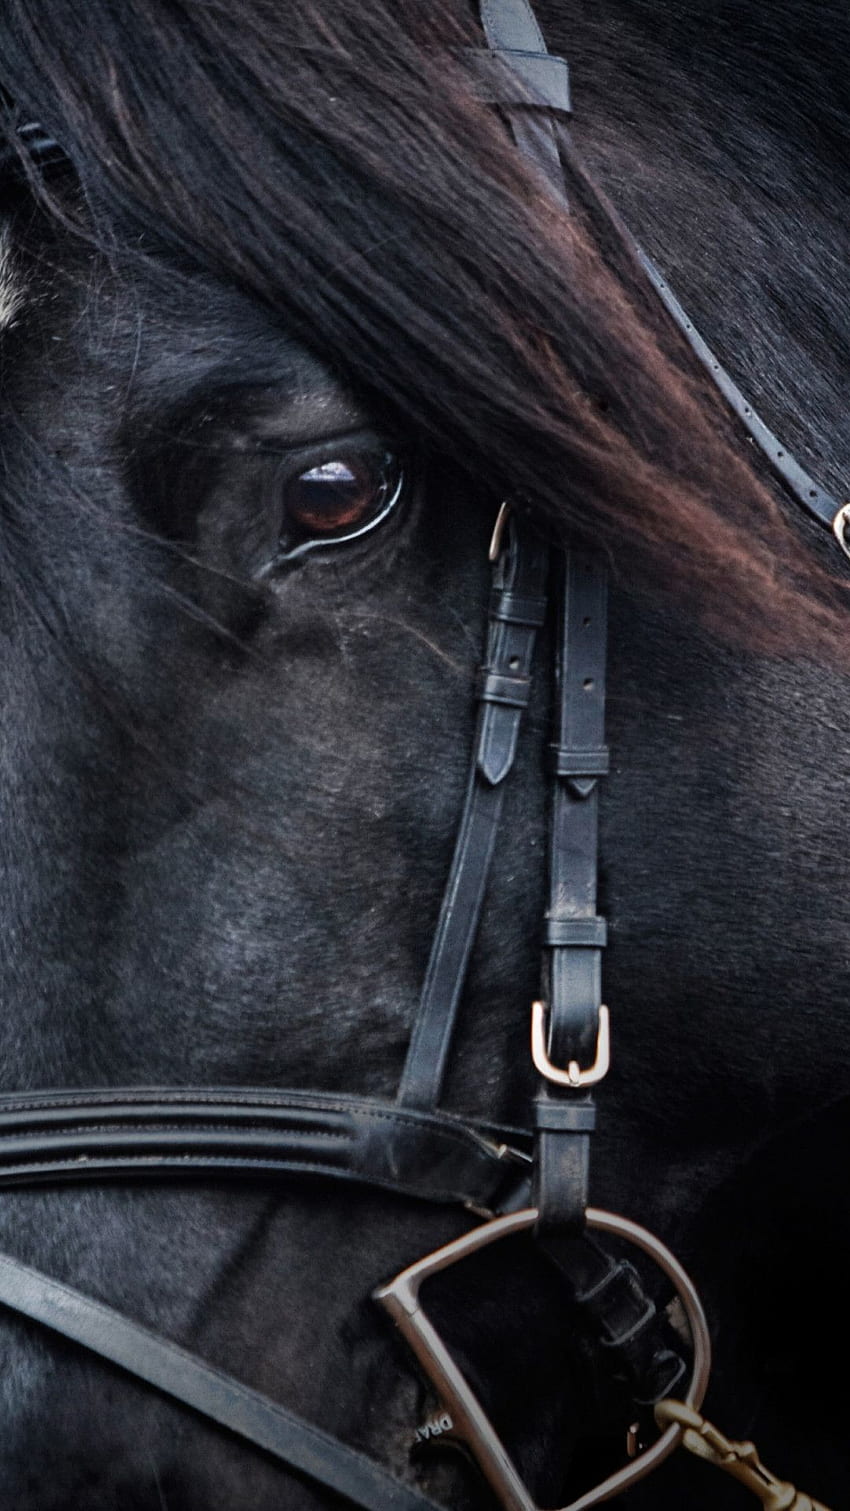 Black Horse - Black Horses - - teahub.io, Black Stallion HD phone ...